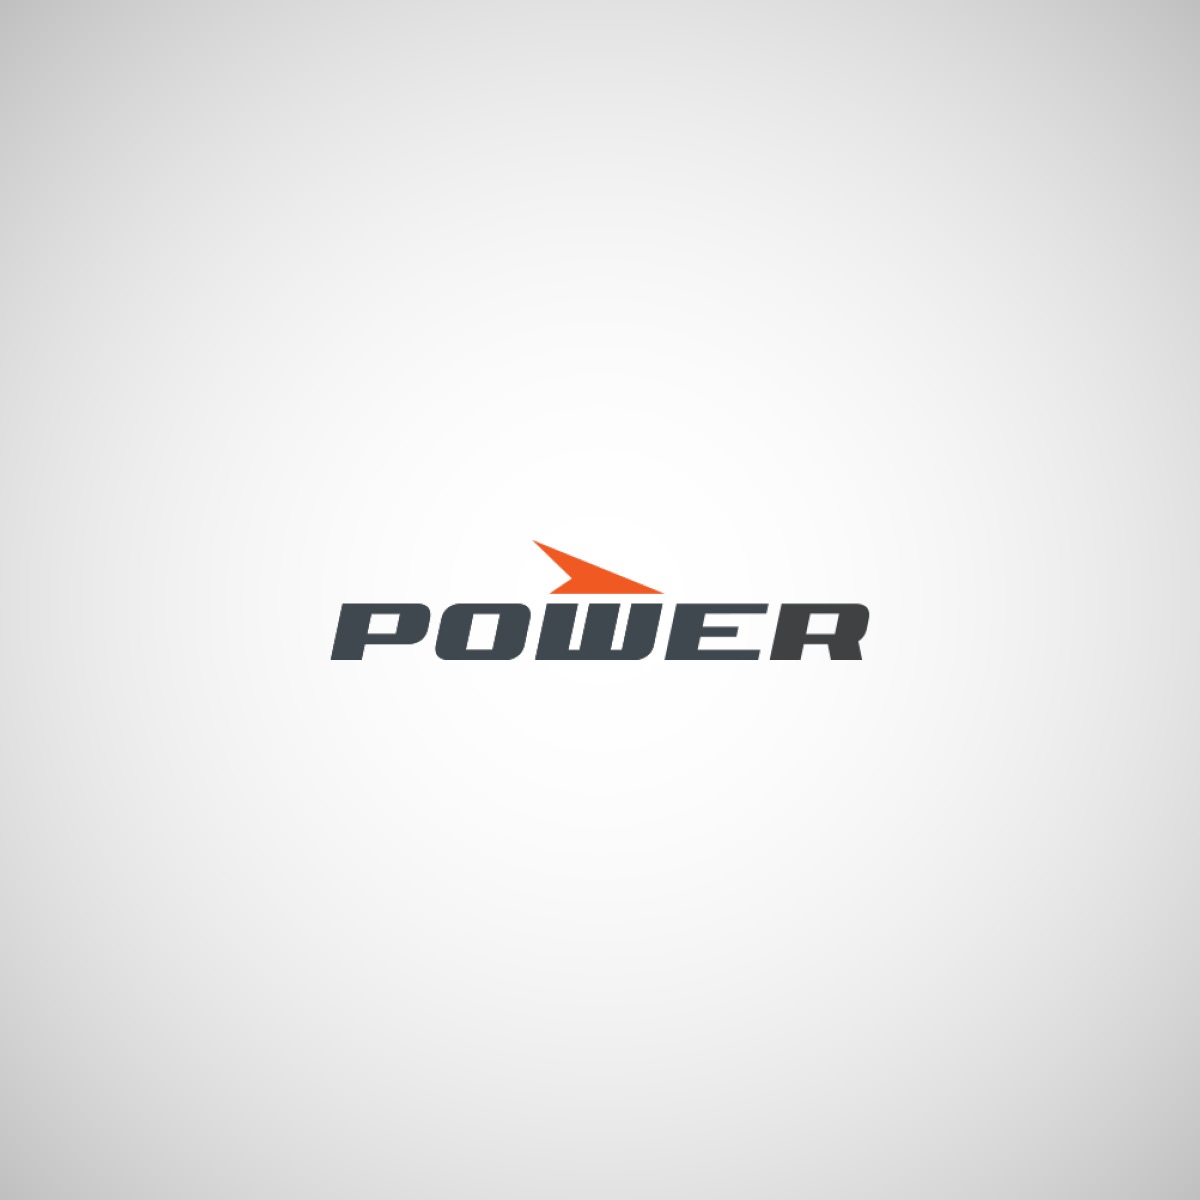 Power_1200x1200.jpg